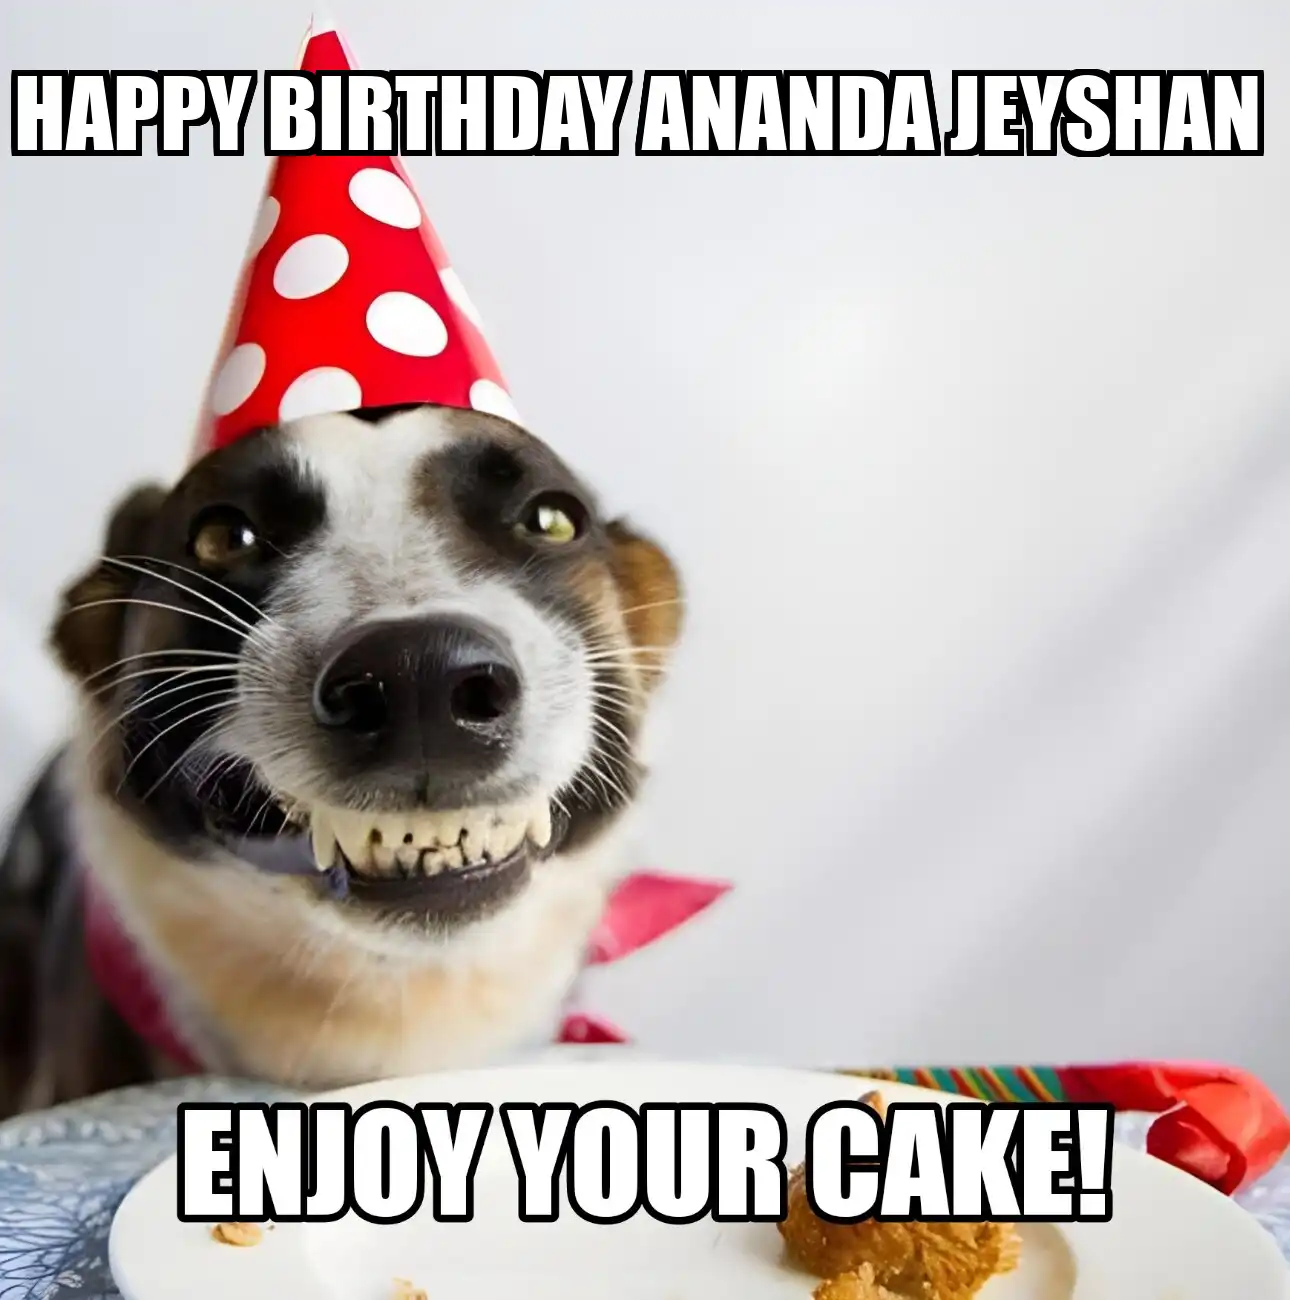 Happy Birthday Ananda jeyshan Enjoy Your Cake Dog Meme